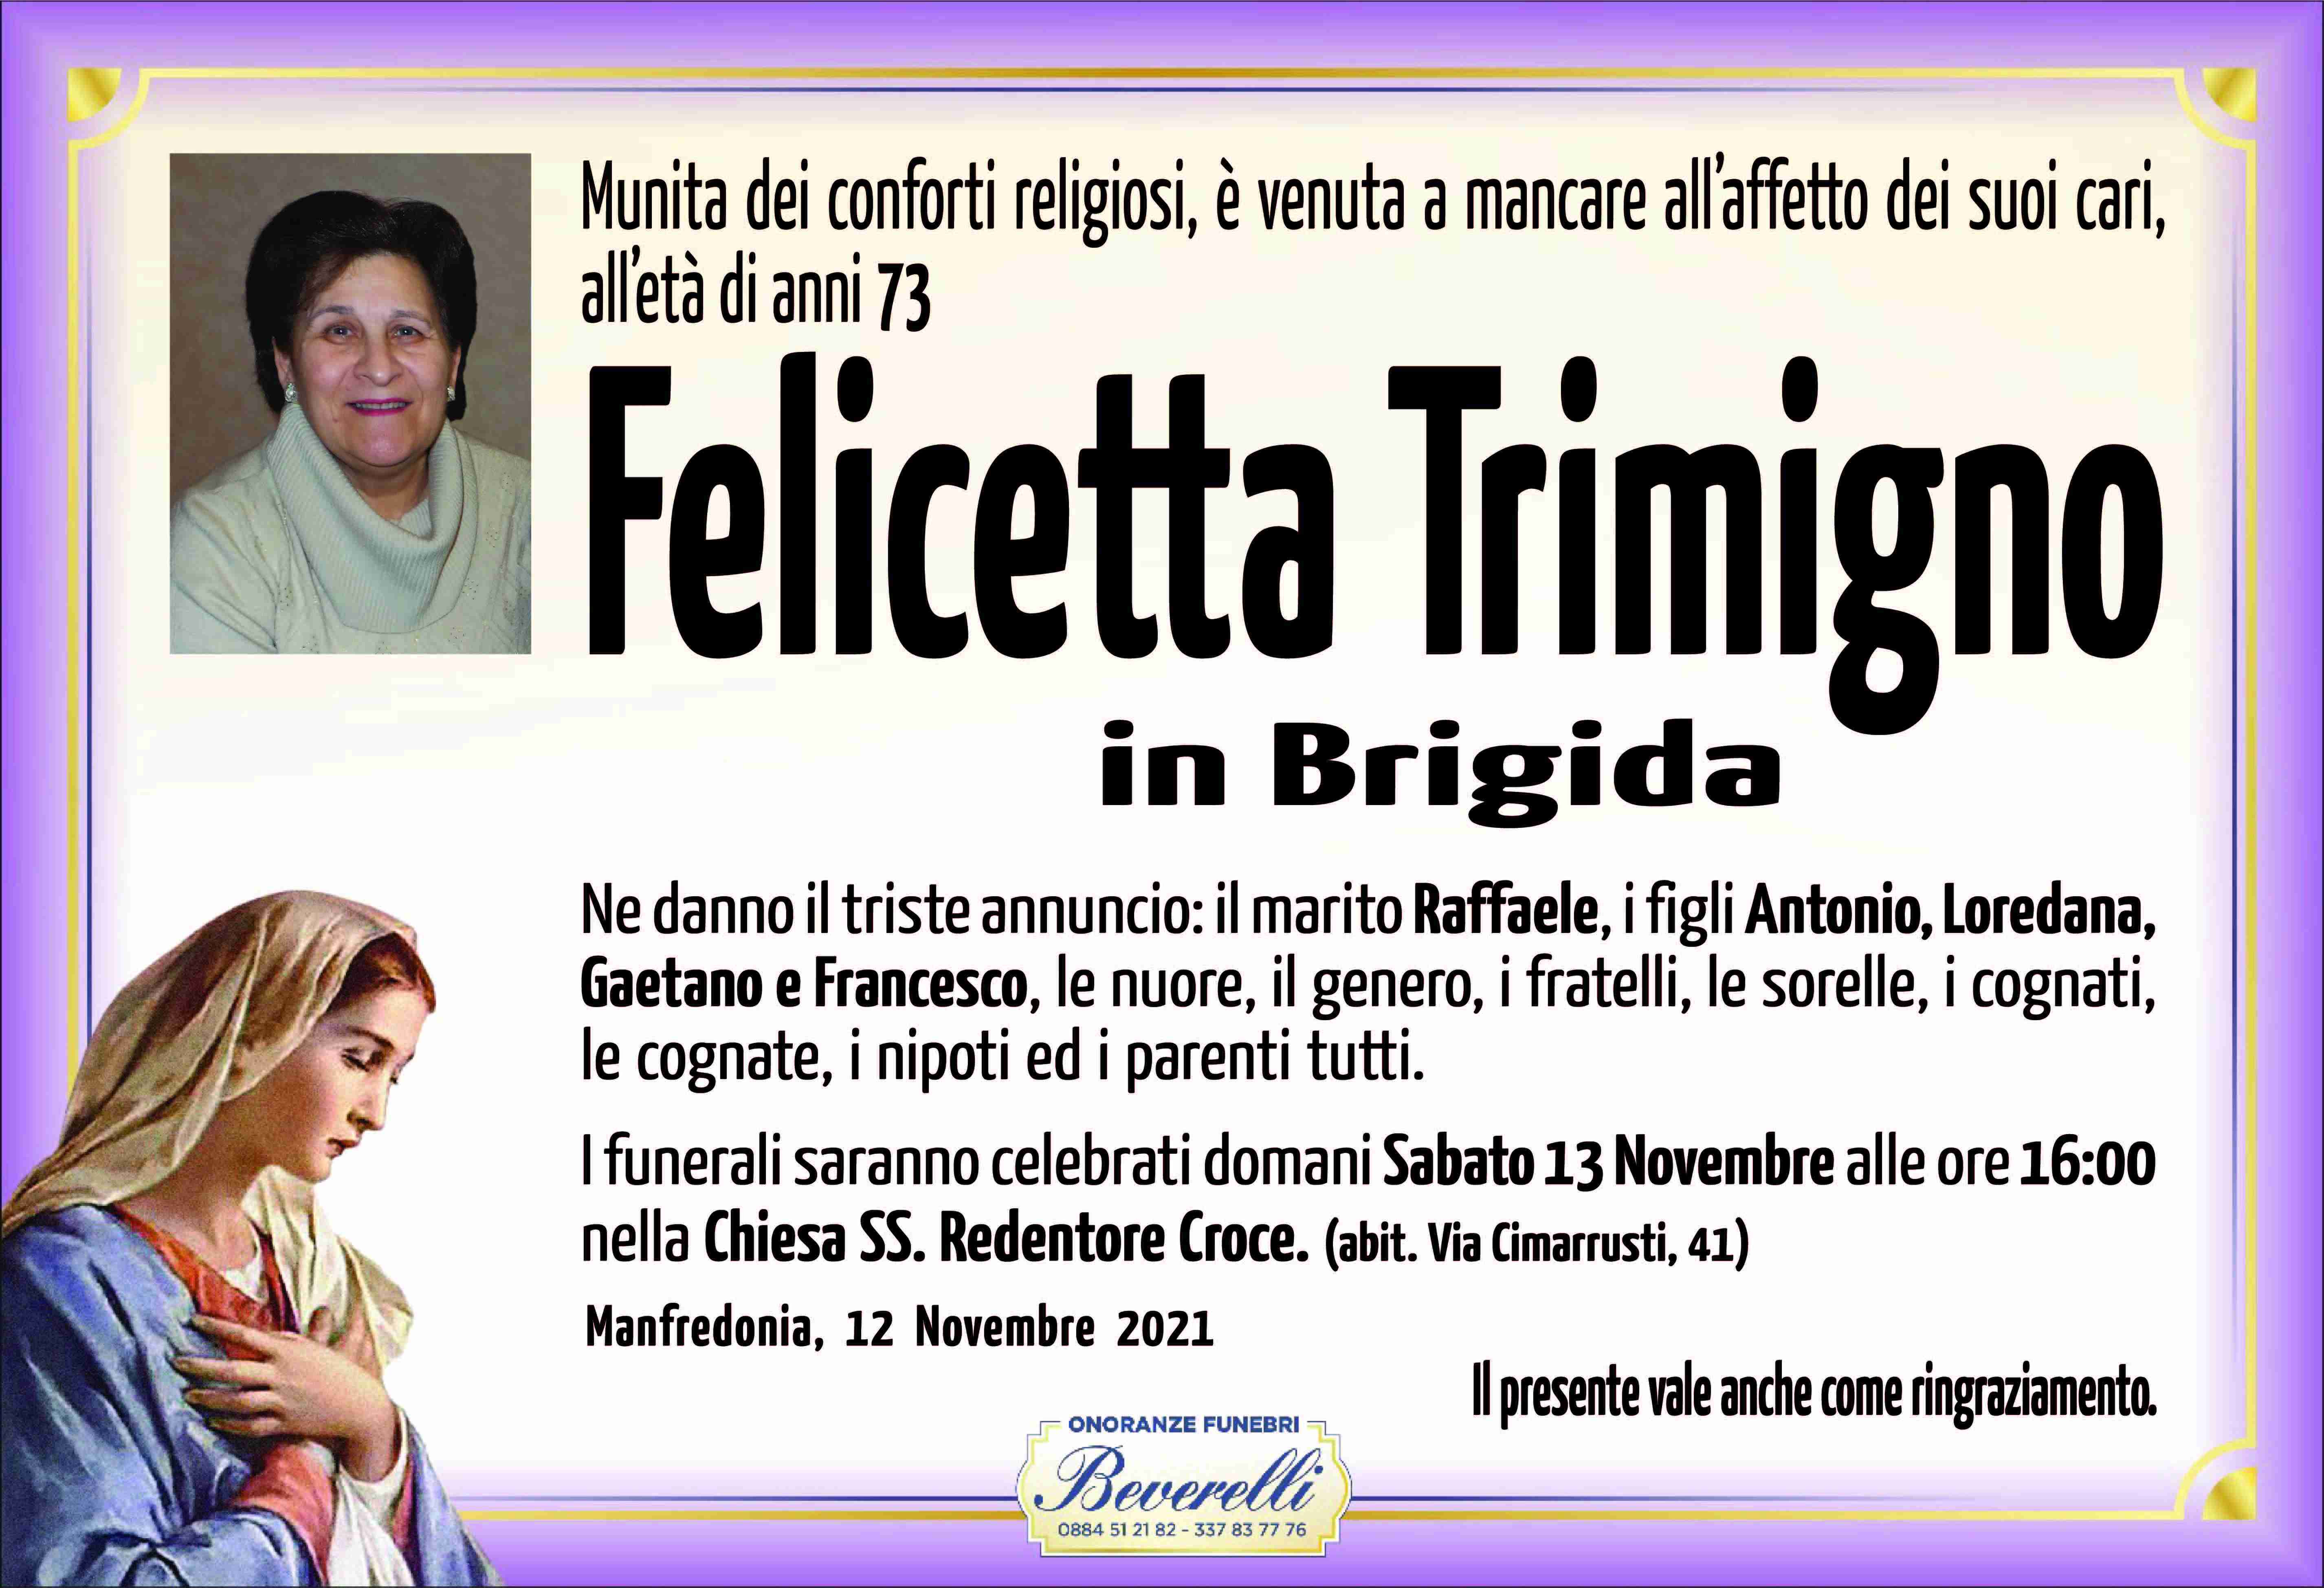 Felicetta Trimigno